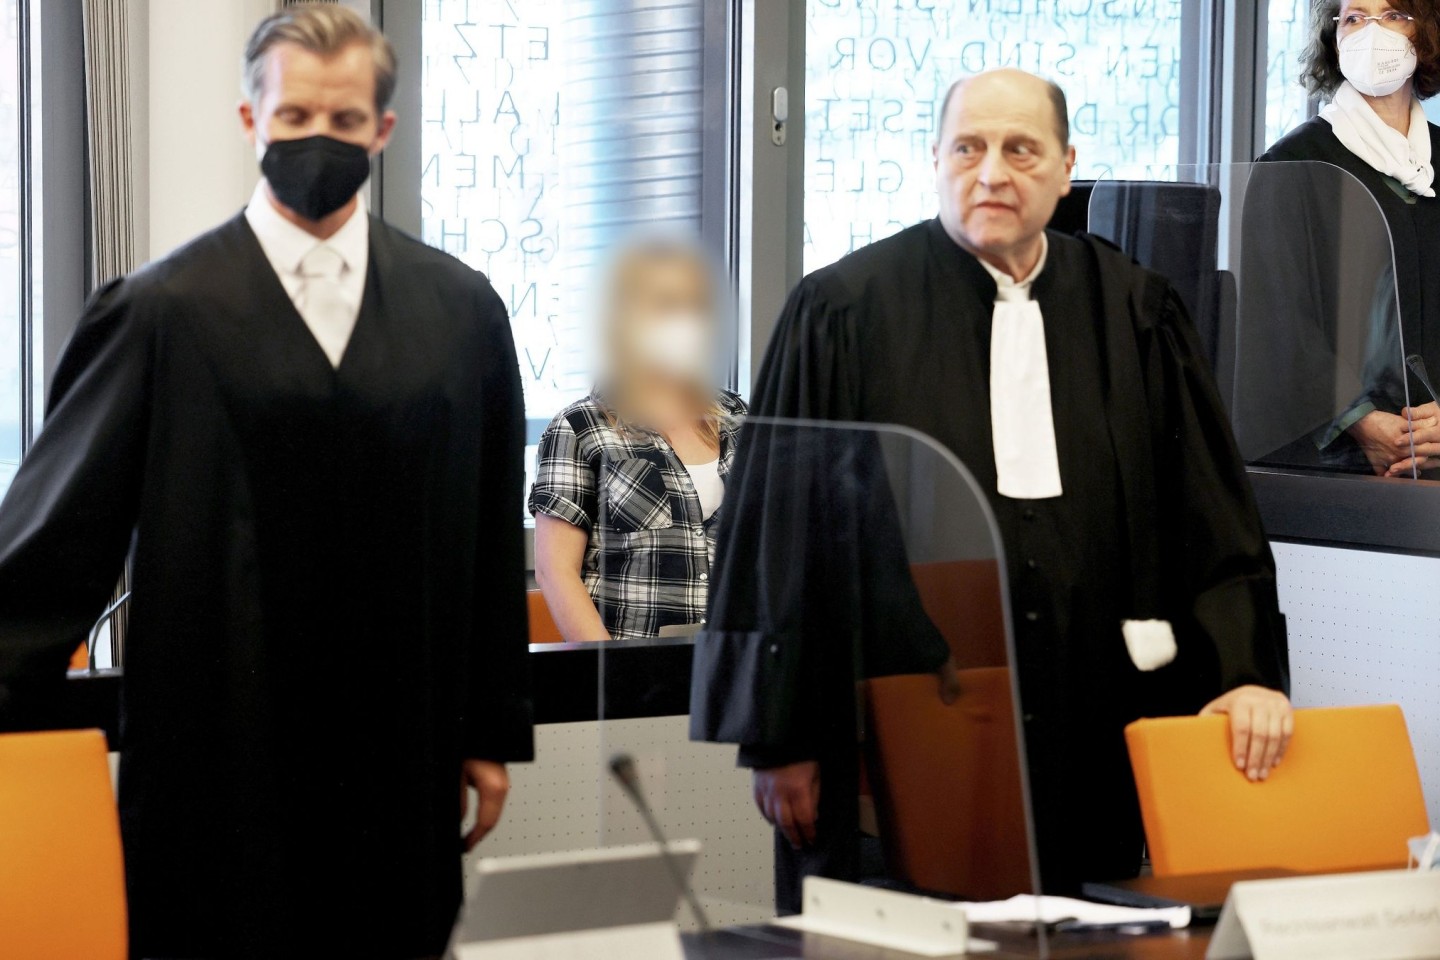 Die angeklagte Mutter zwischen ihren Anwälten Felix Menke (l) und Thomas Seifert (r) im Gerichtssaal.